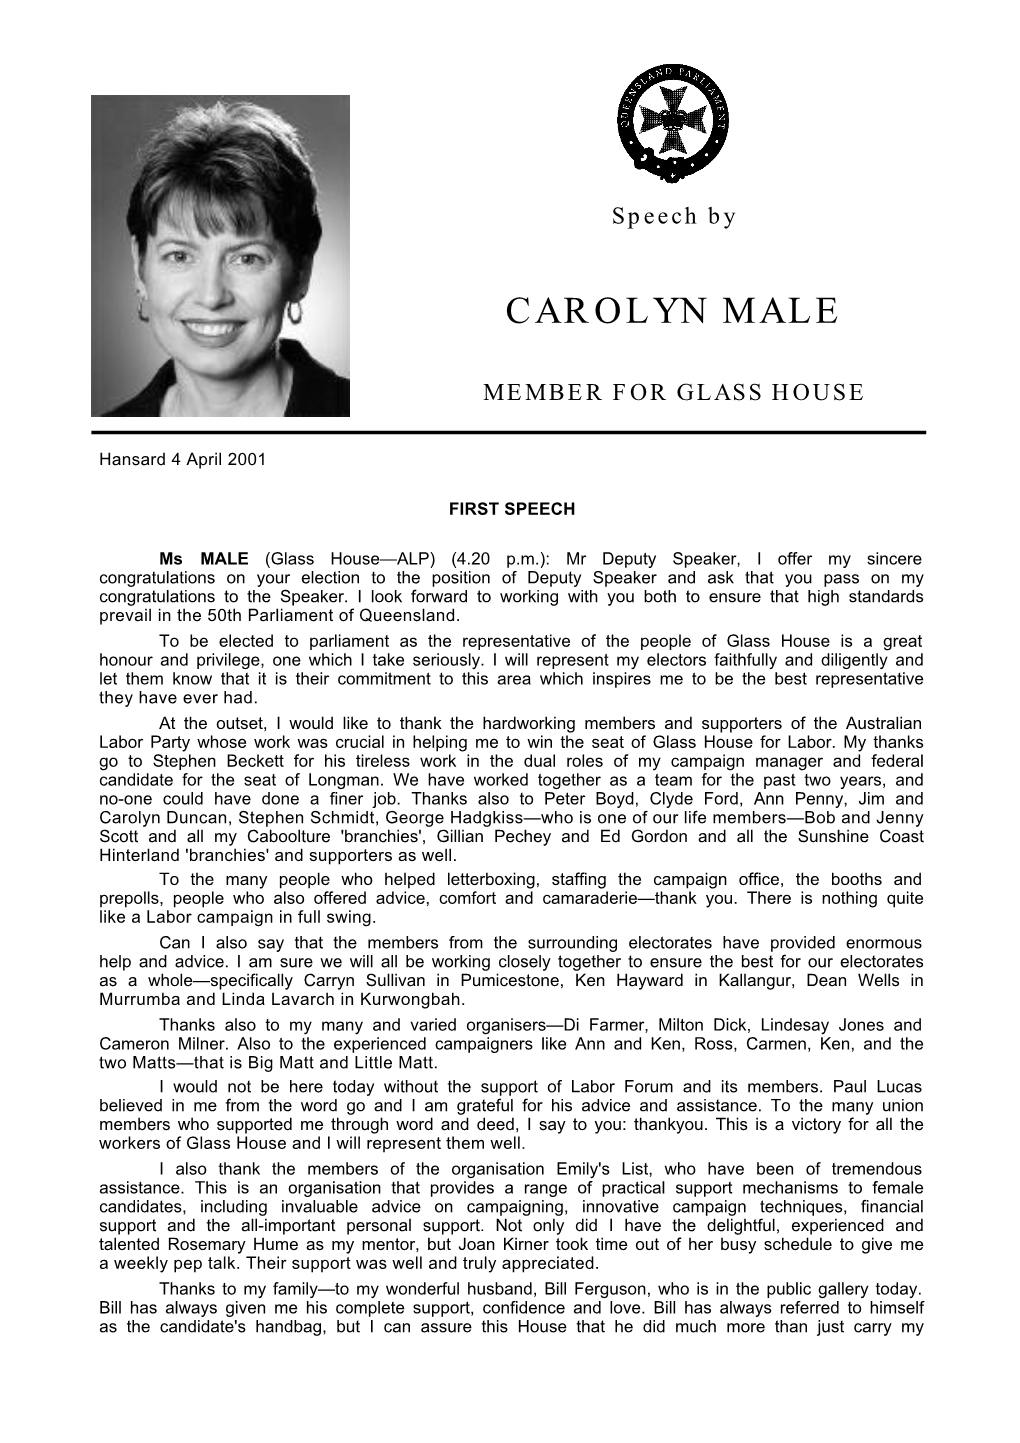 Carolyn Male